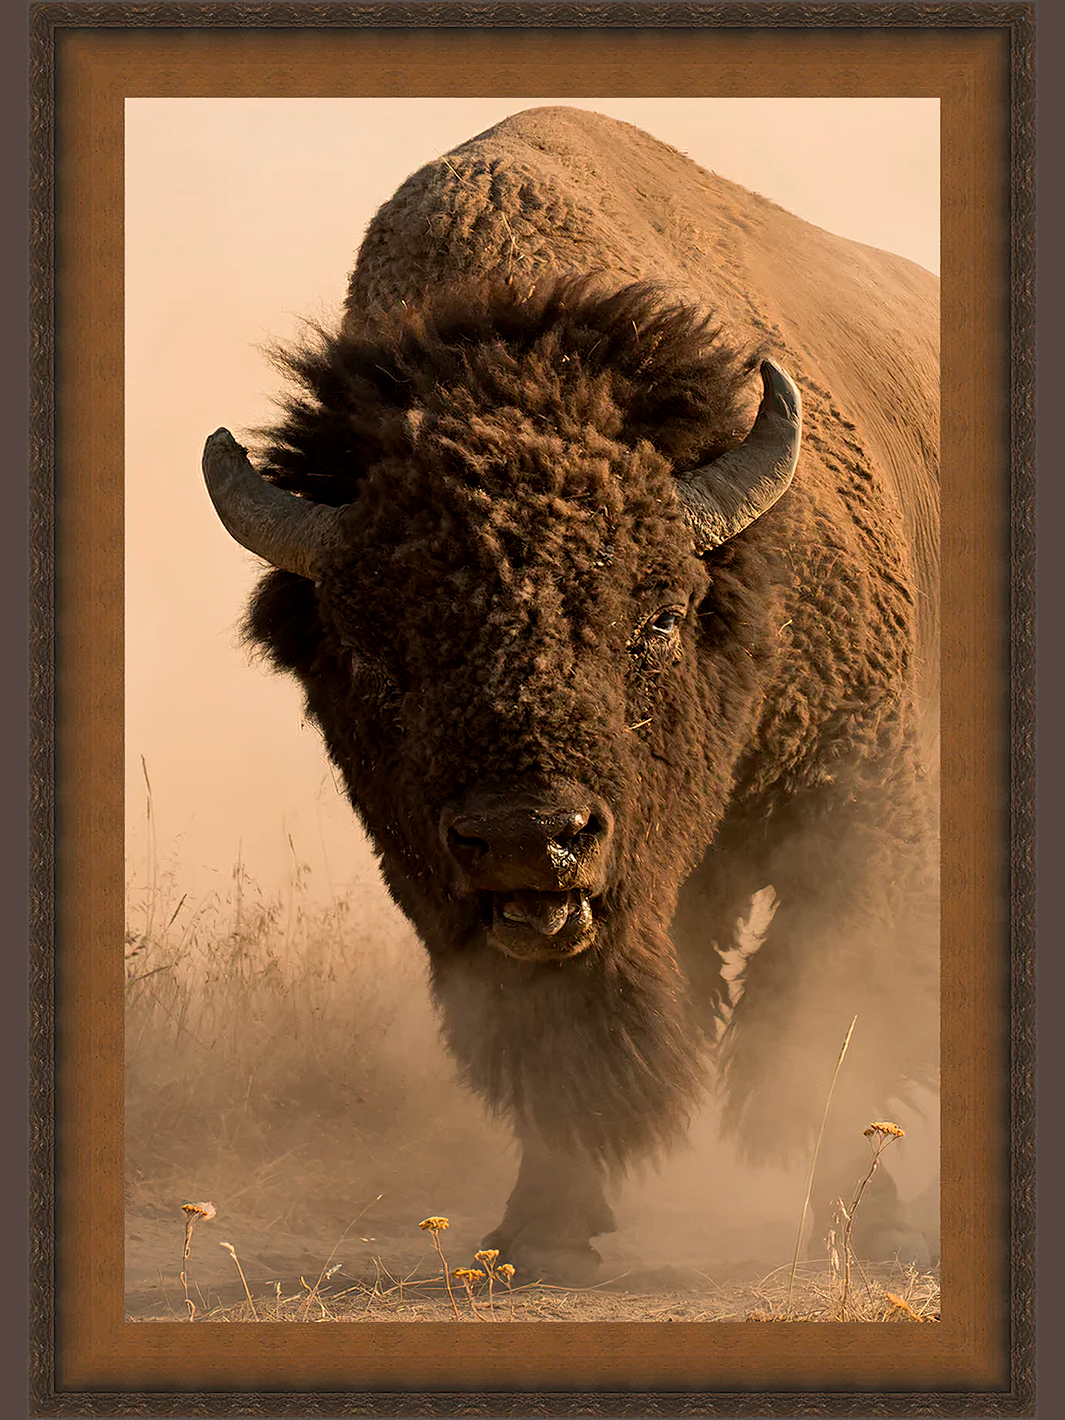 American Buffalo by Robert Dawson